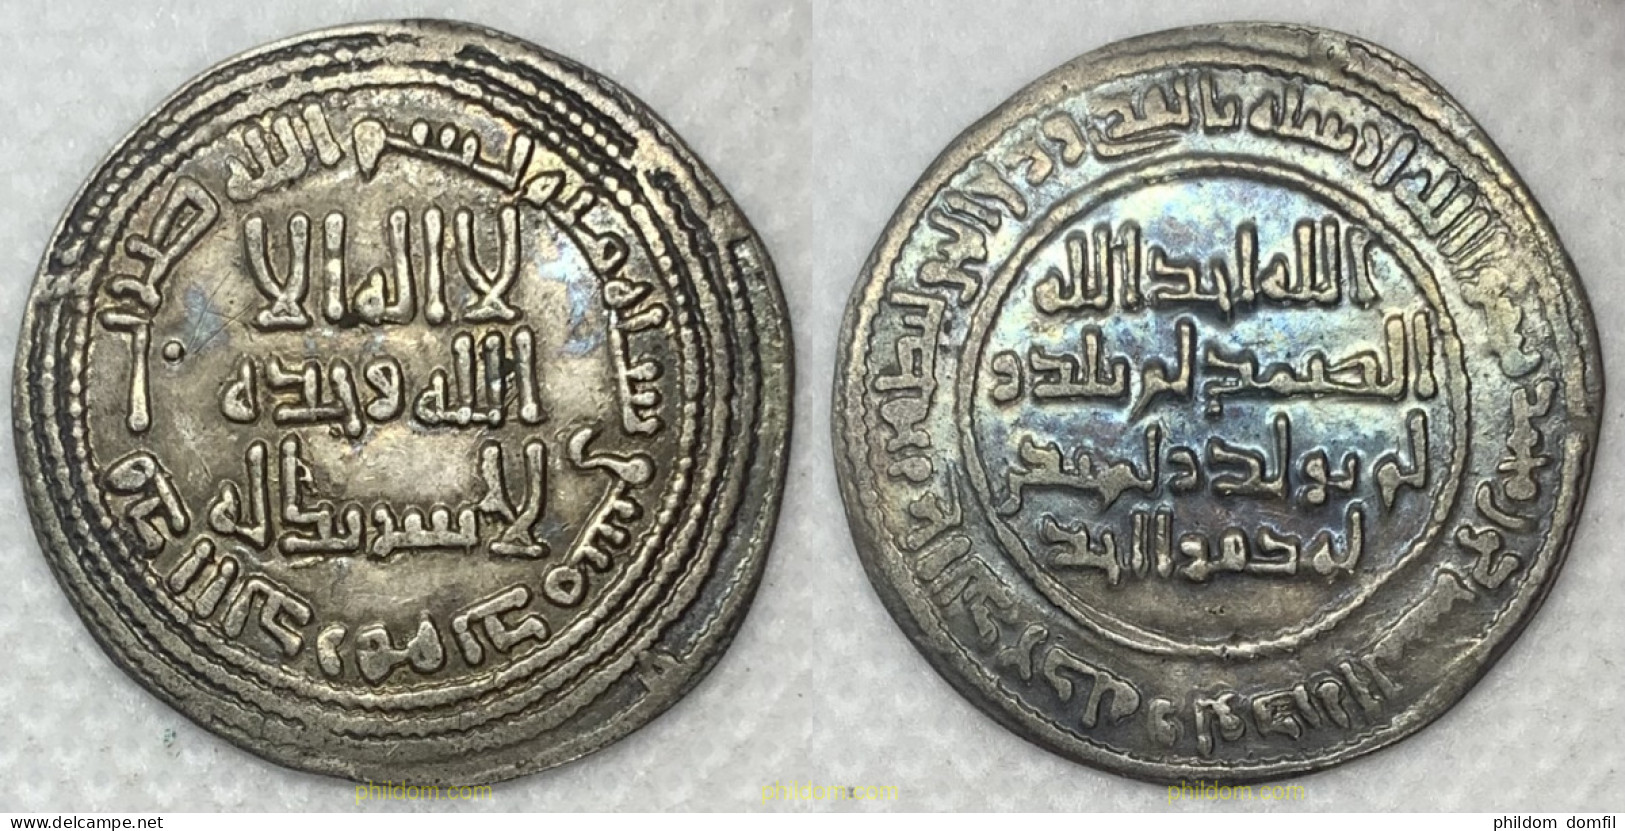 3356 MARRUECOS 0715 UMAYYAD: AL-WALID I B. 'ABD AL-MALIK (705-715), SILVER DIRHAM - Marocco